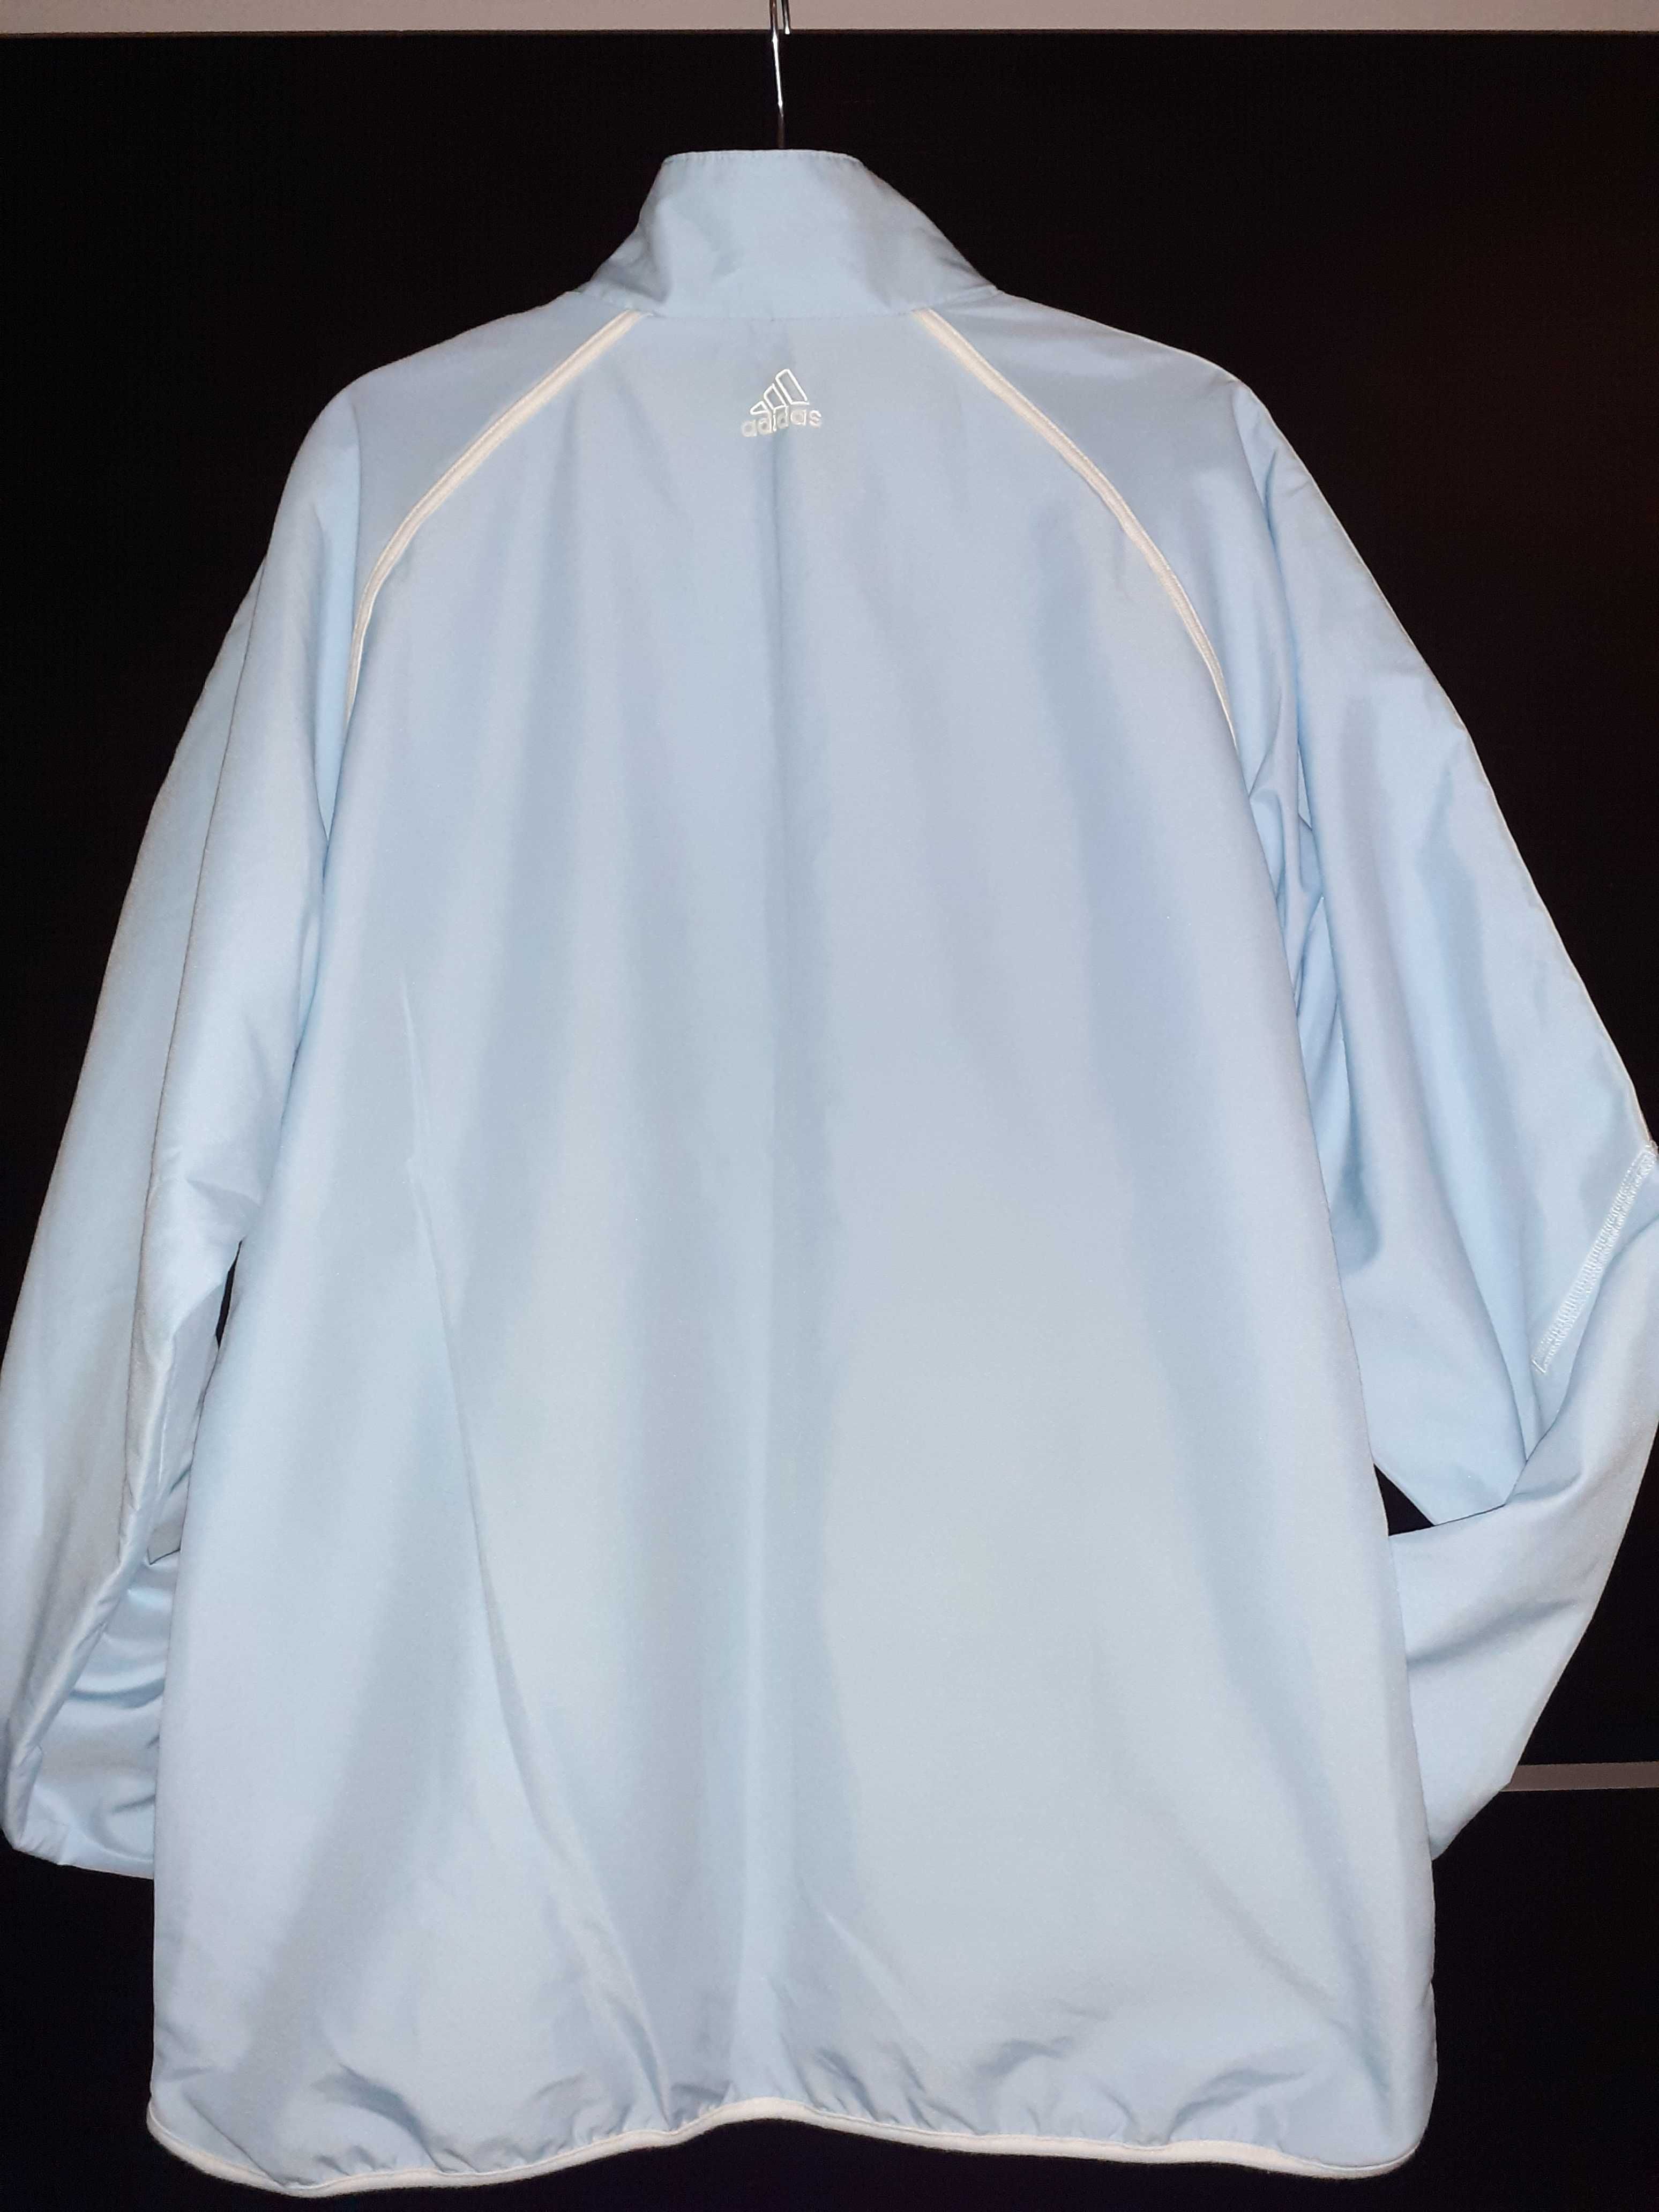 Adidas bluza sportowa kurtka wiatrówka r S 36